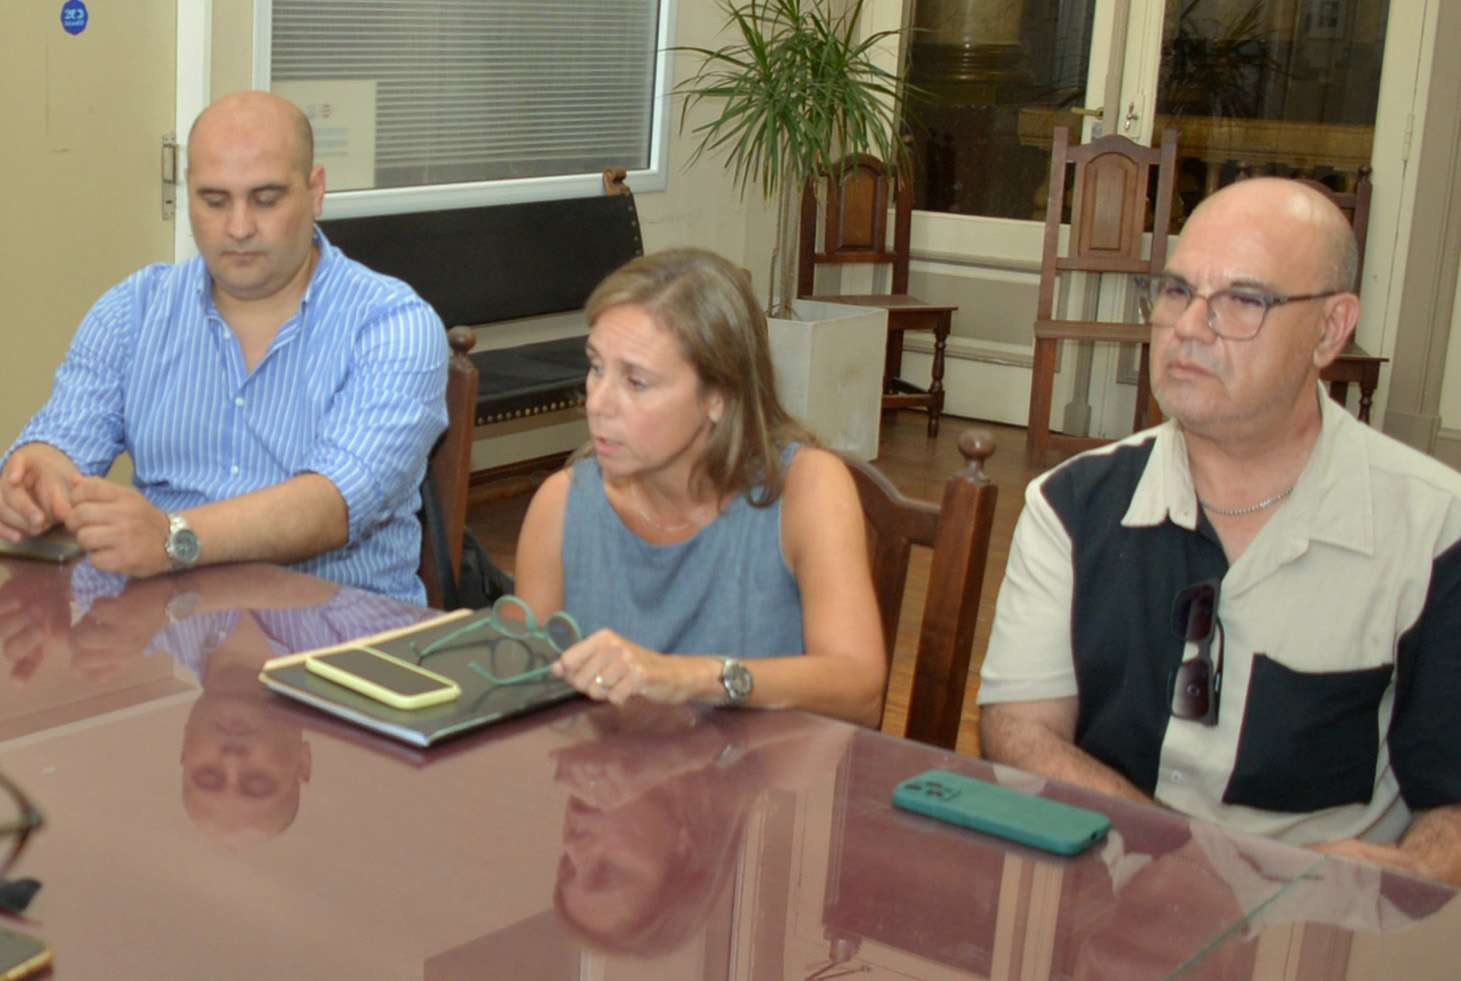 Los oncólogos Pablo Vera, Ana Inés Roncoroni y Germán Poiman presentaron una propuesta económica para retomar las atenciones en el Hospital.